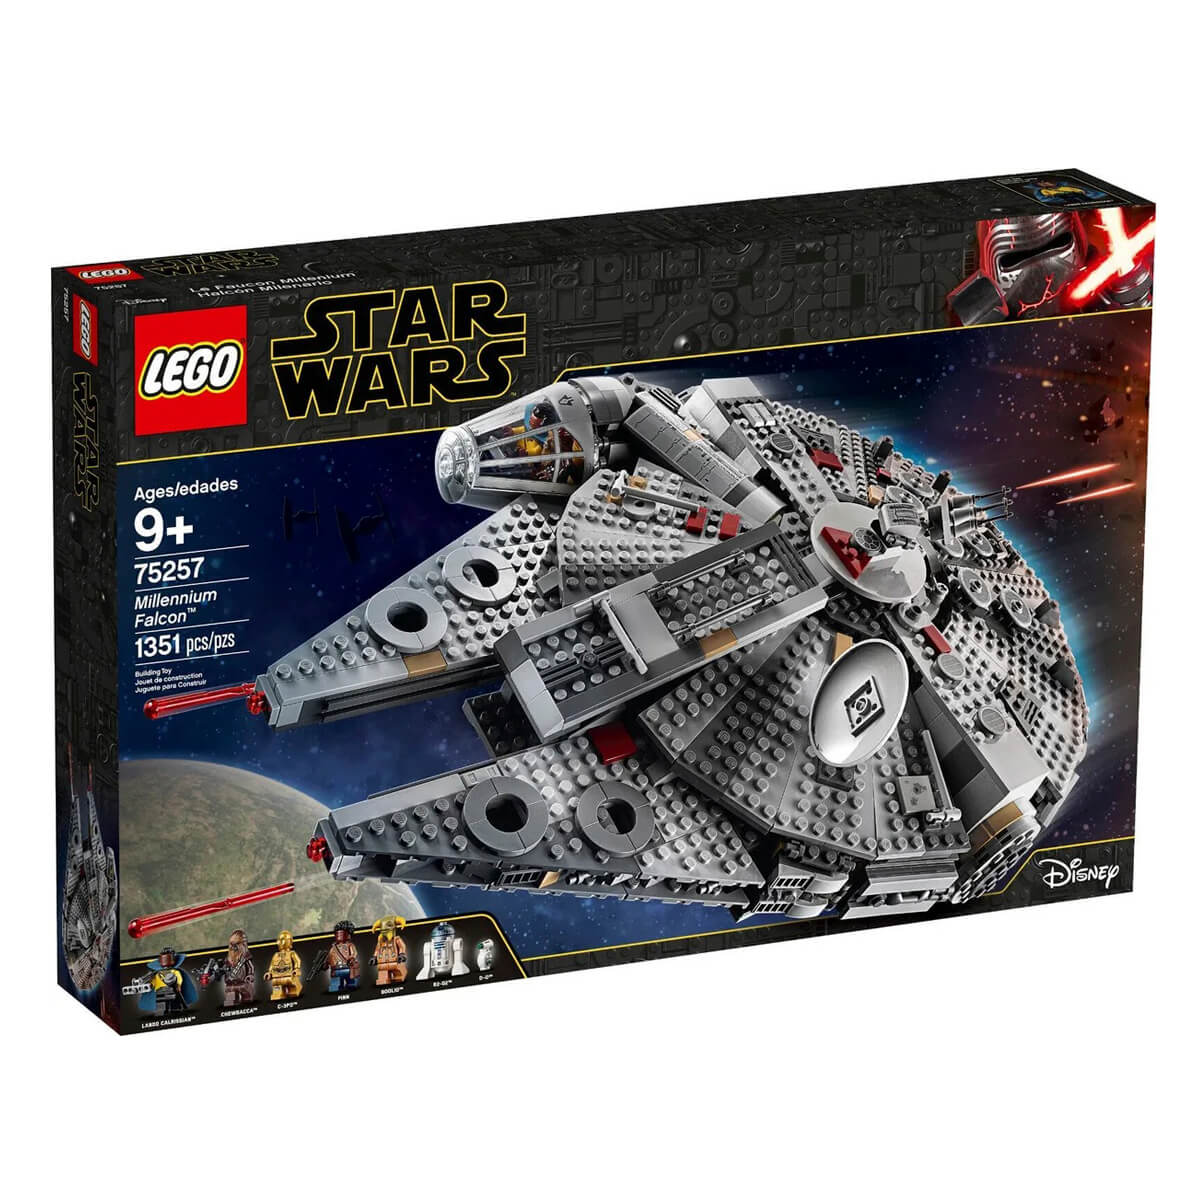 Конструктор LEGO Star Wars Episode IX 75257 Сокол Тысячелетия конструктор lego star wars 75192 сокол тысячелетия 7541 дет